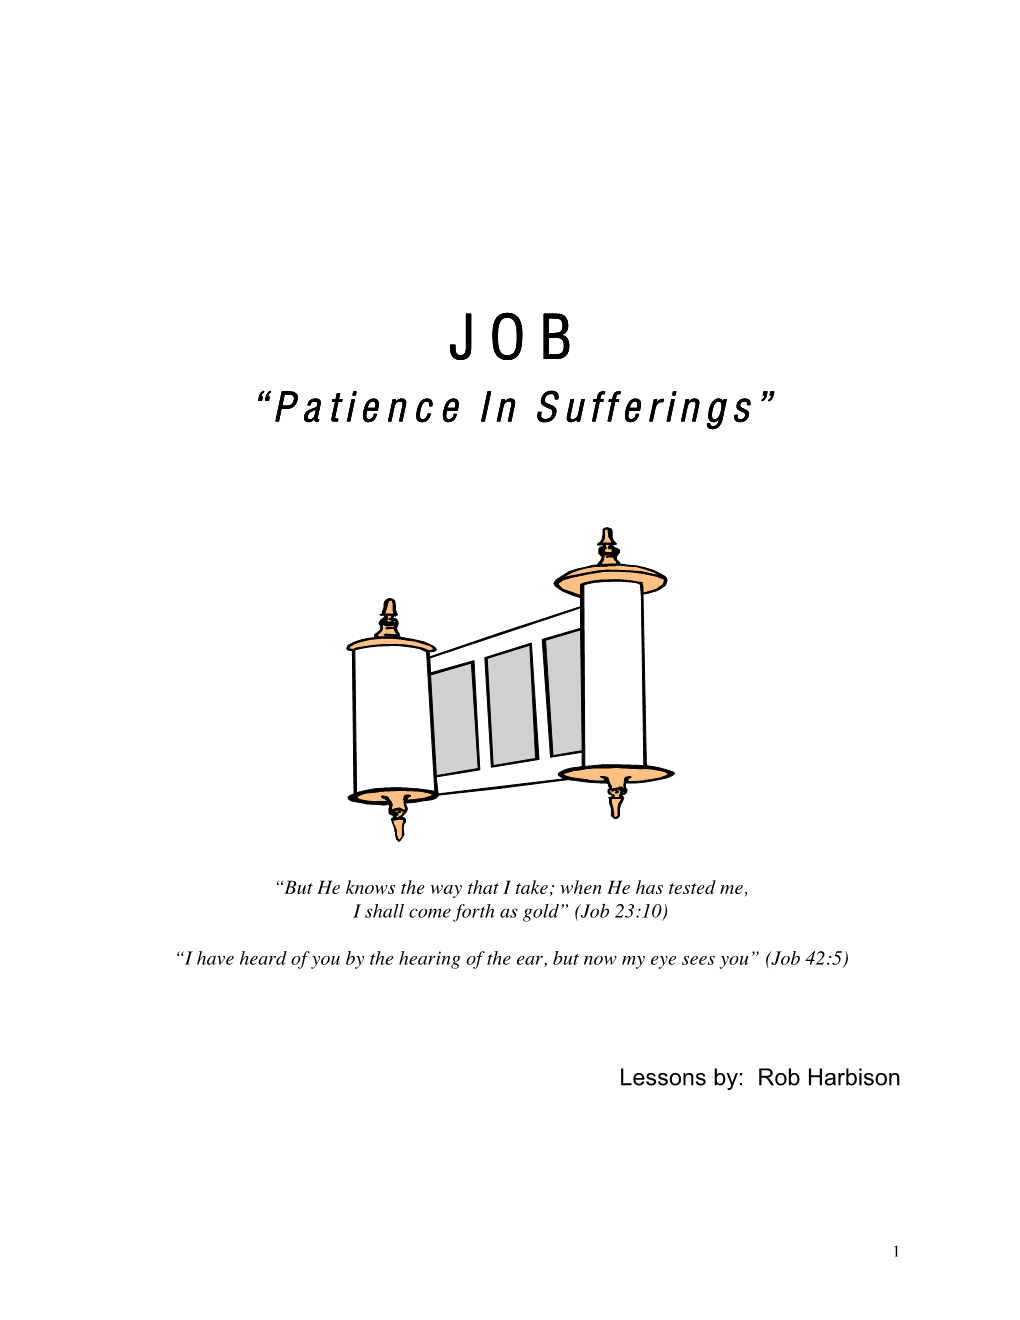 Job: Patience in Sufferings